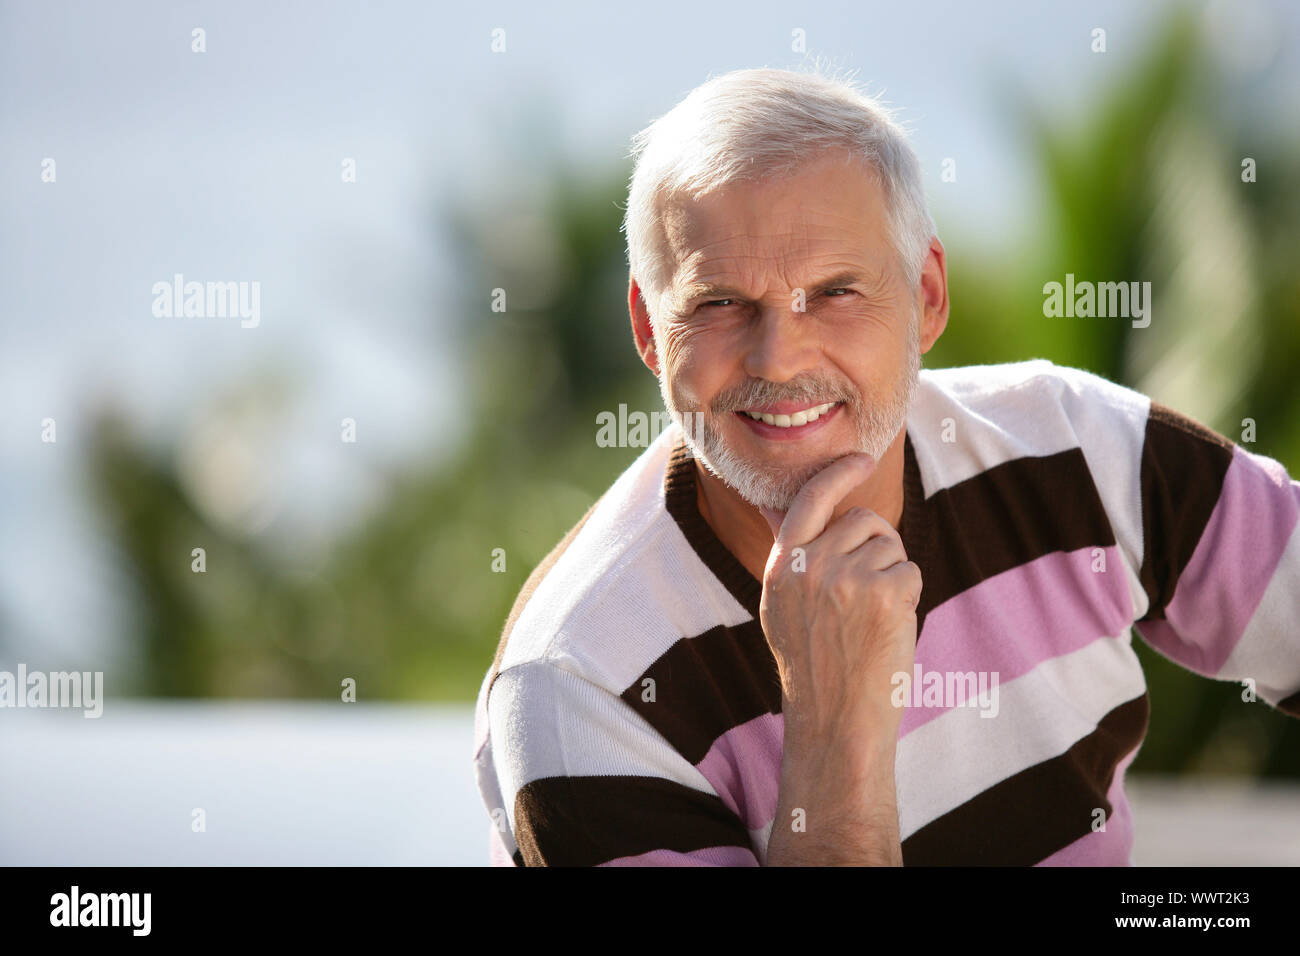 Elderly man sitting in garden Stock Photo